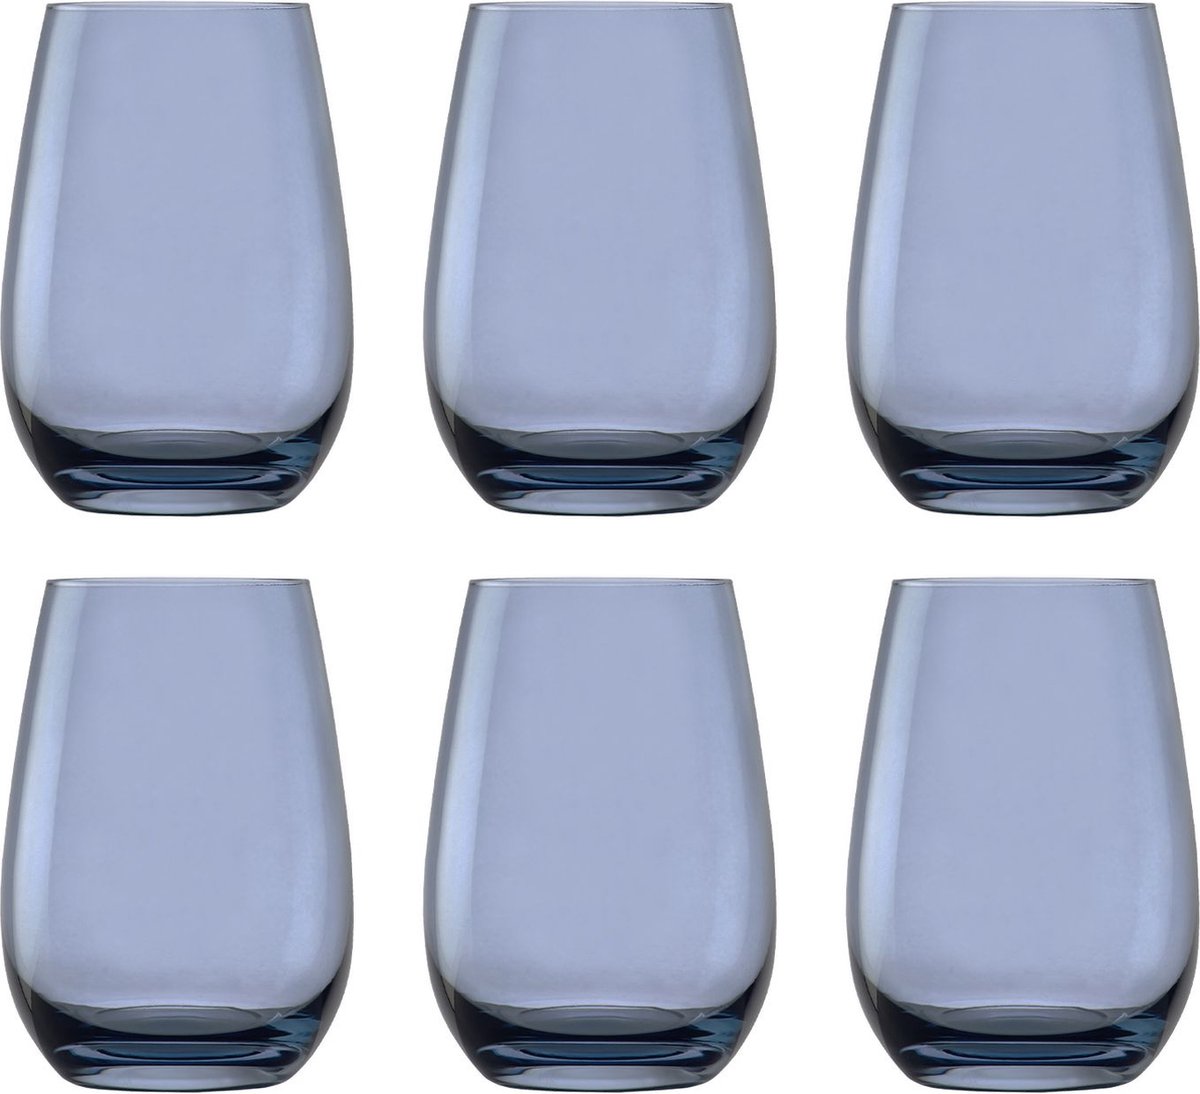 Gekleurde drinkglazen ELEMENTS set van 6, blauwgrijs, 465 ml